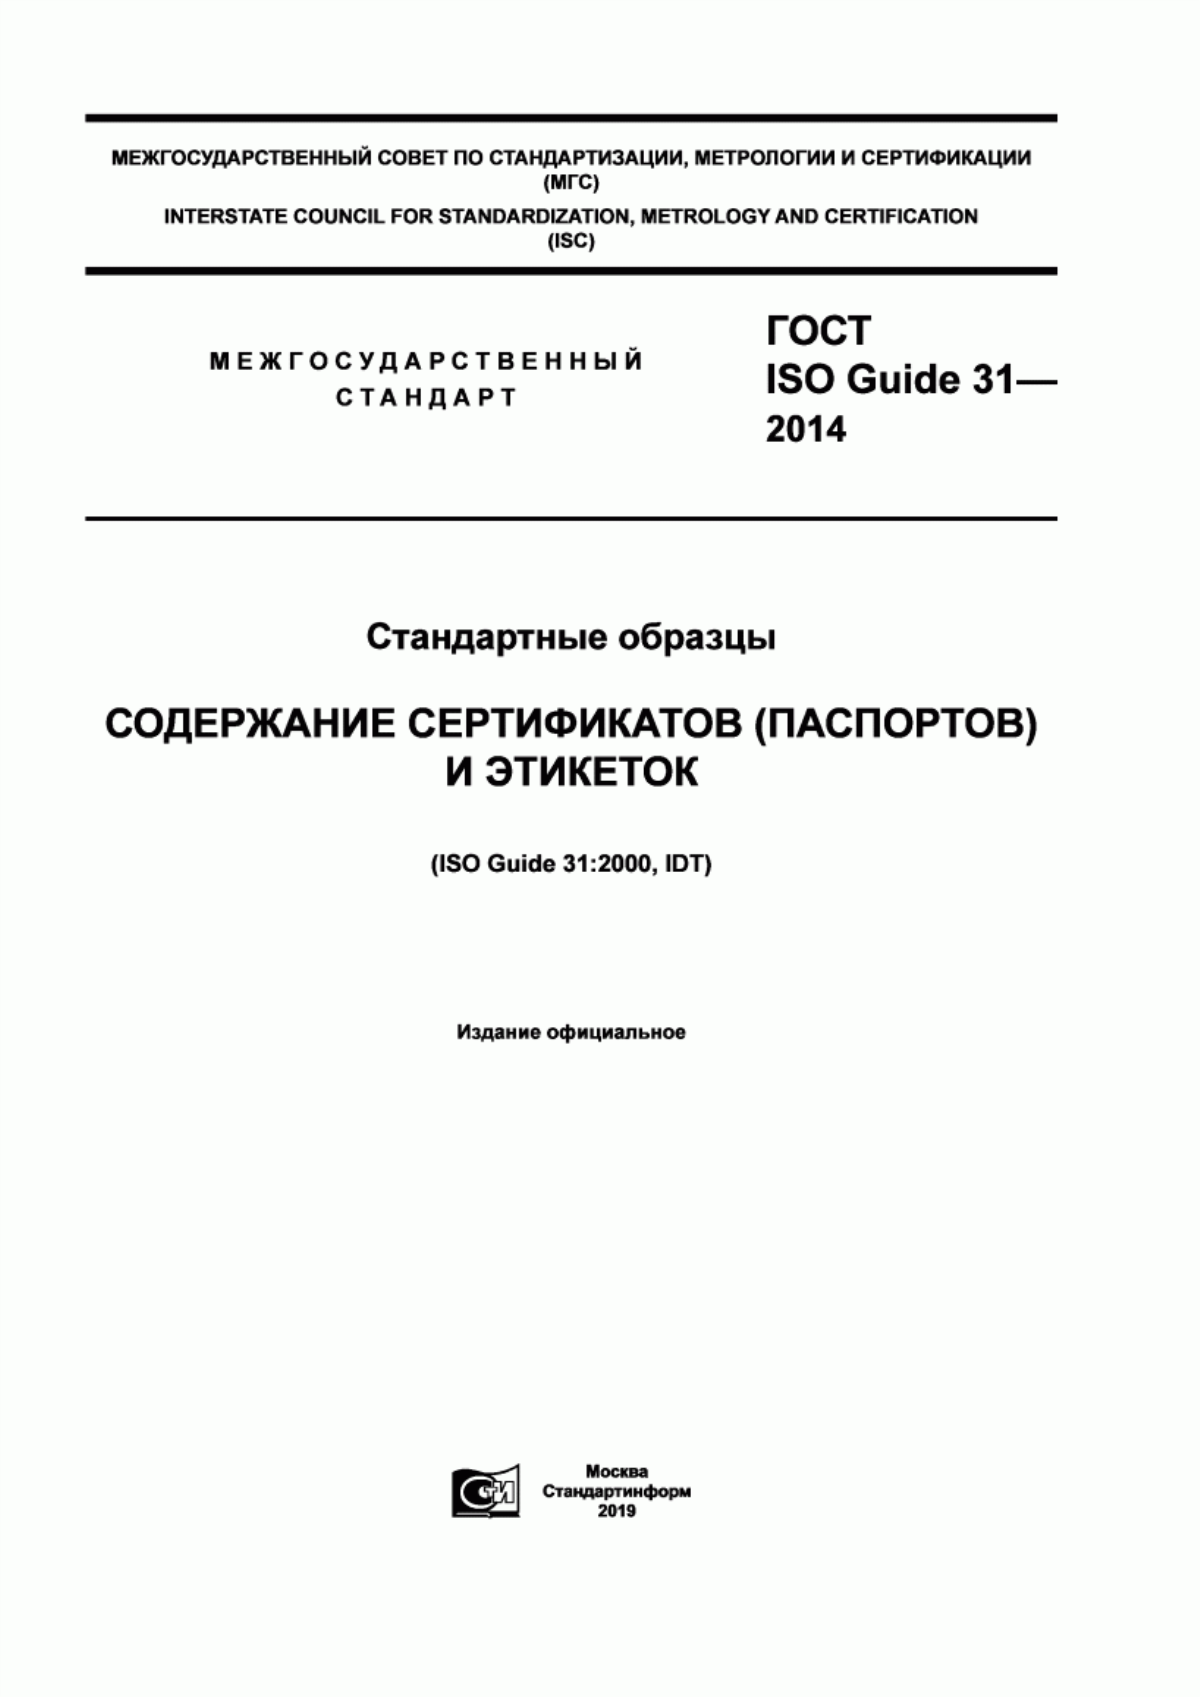 ГОСТ ISO Guide 31-2014 Стандартные образцы. Содержание сертификатов (паспортов) и этикеток